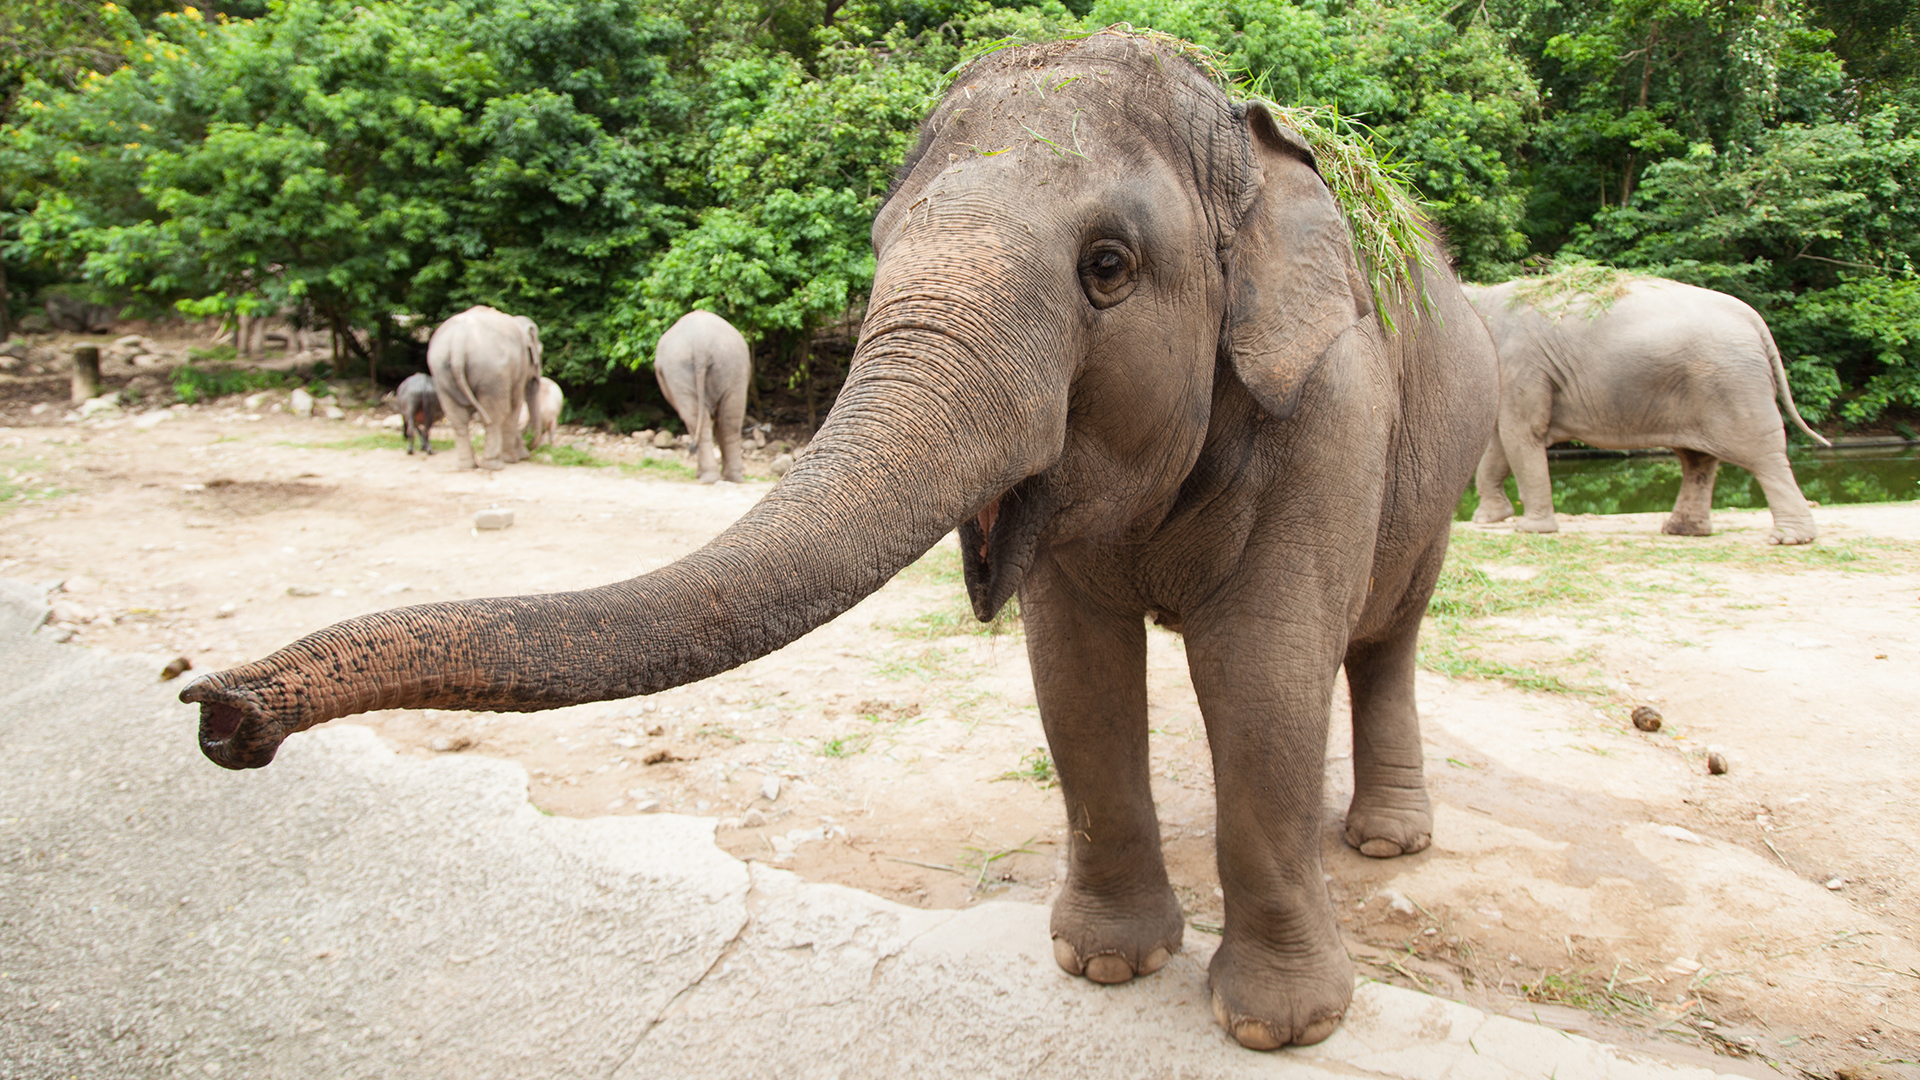 An Asian elephant extends its trunk.